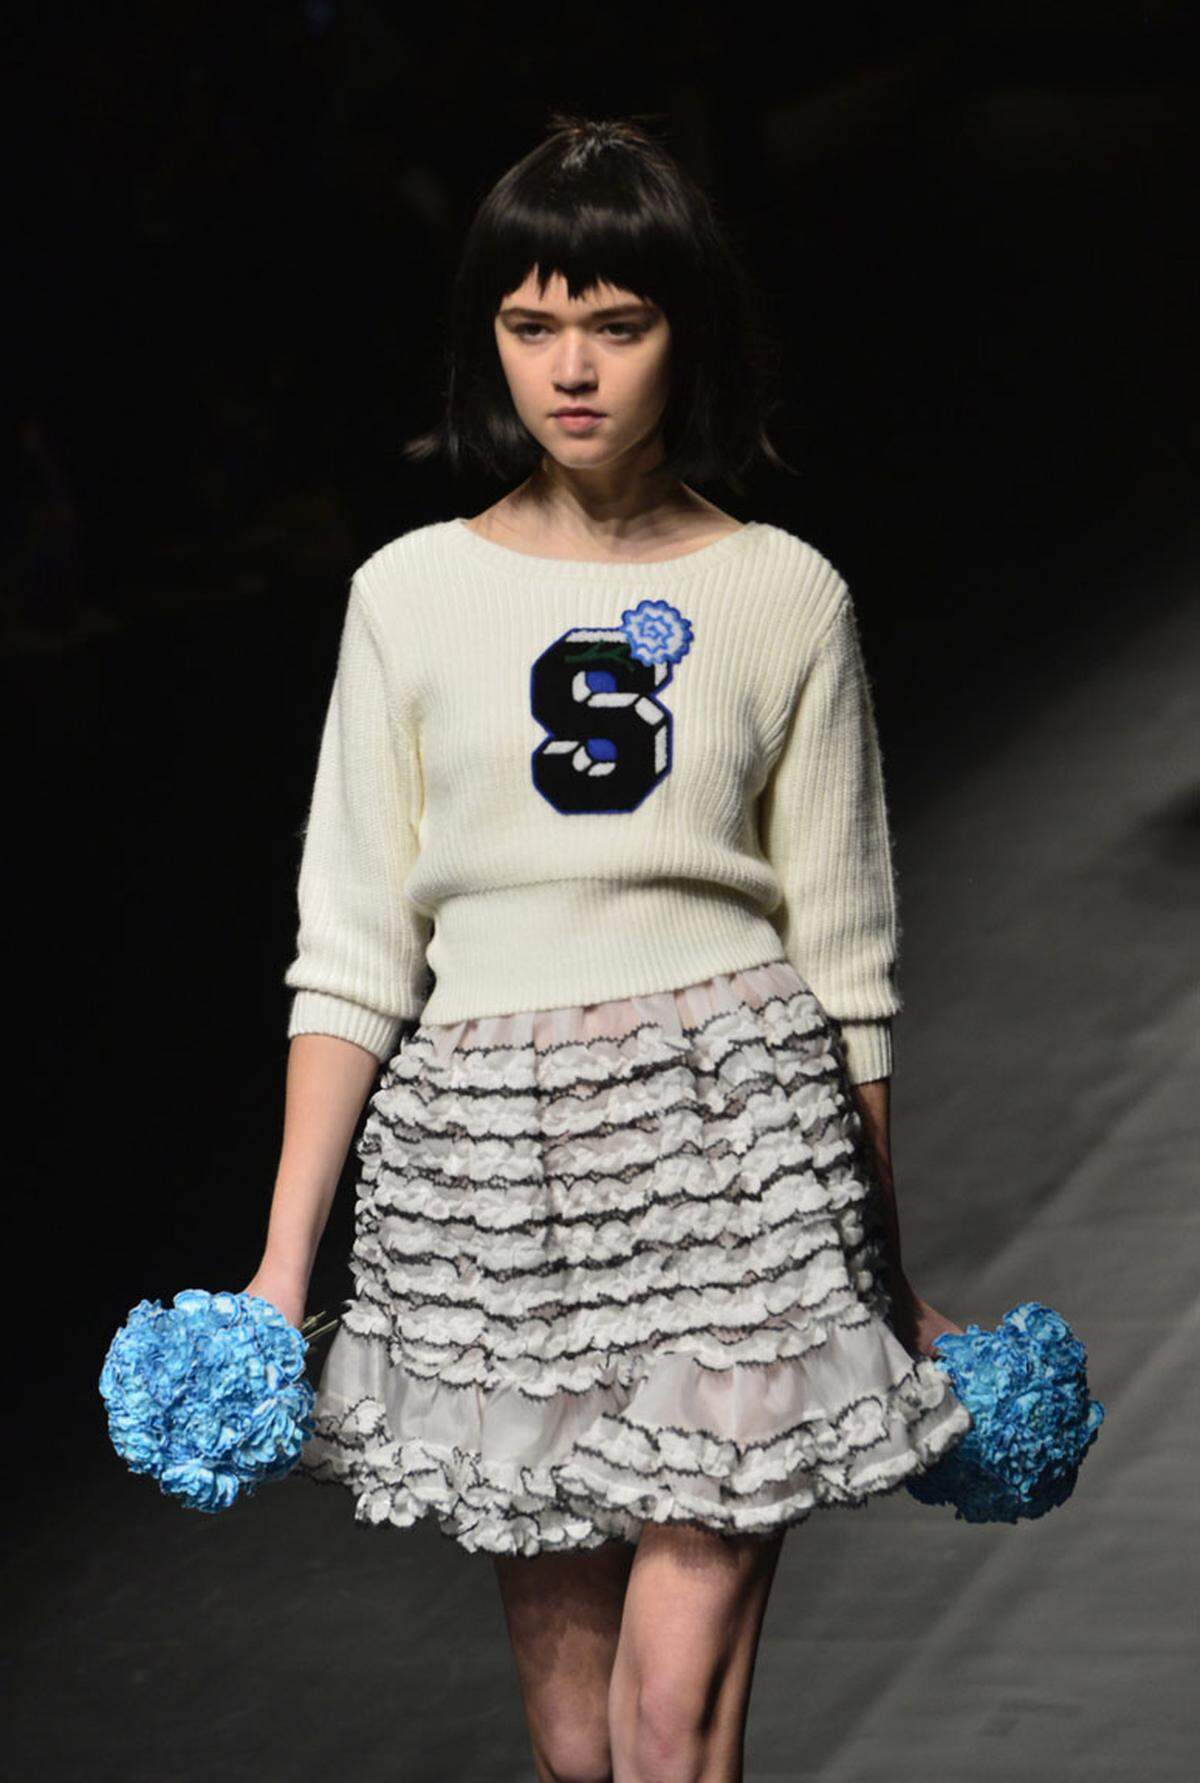 Neue Trends werden nicht nur in New York, London, Mailand und Paris präsentiert. Bei der Mercedes Benz Fashion Week in Tokio präsentierte Designerin Pim Sukhahuta für das Label Sretsis  ihre neuen Entwürfe. Sie ließ sich offensichtlich von Highschool-Mode inspirieren ...